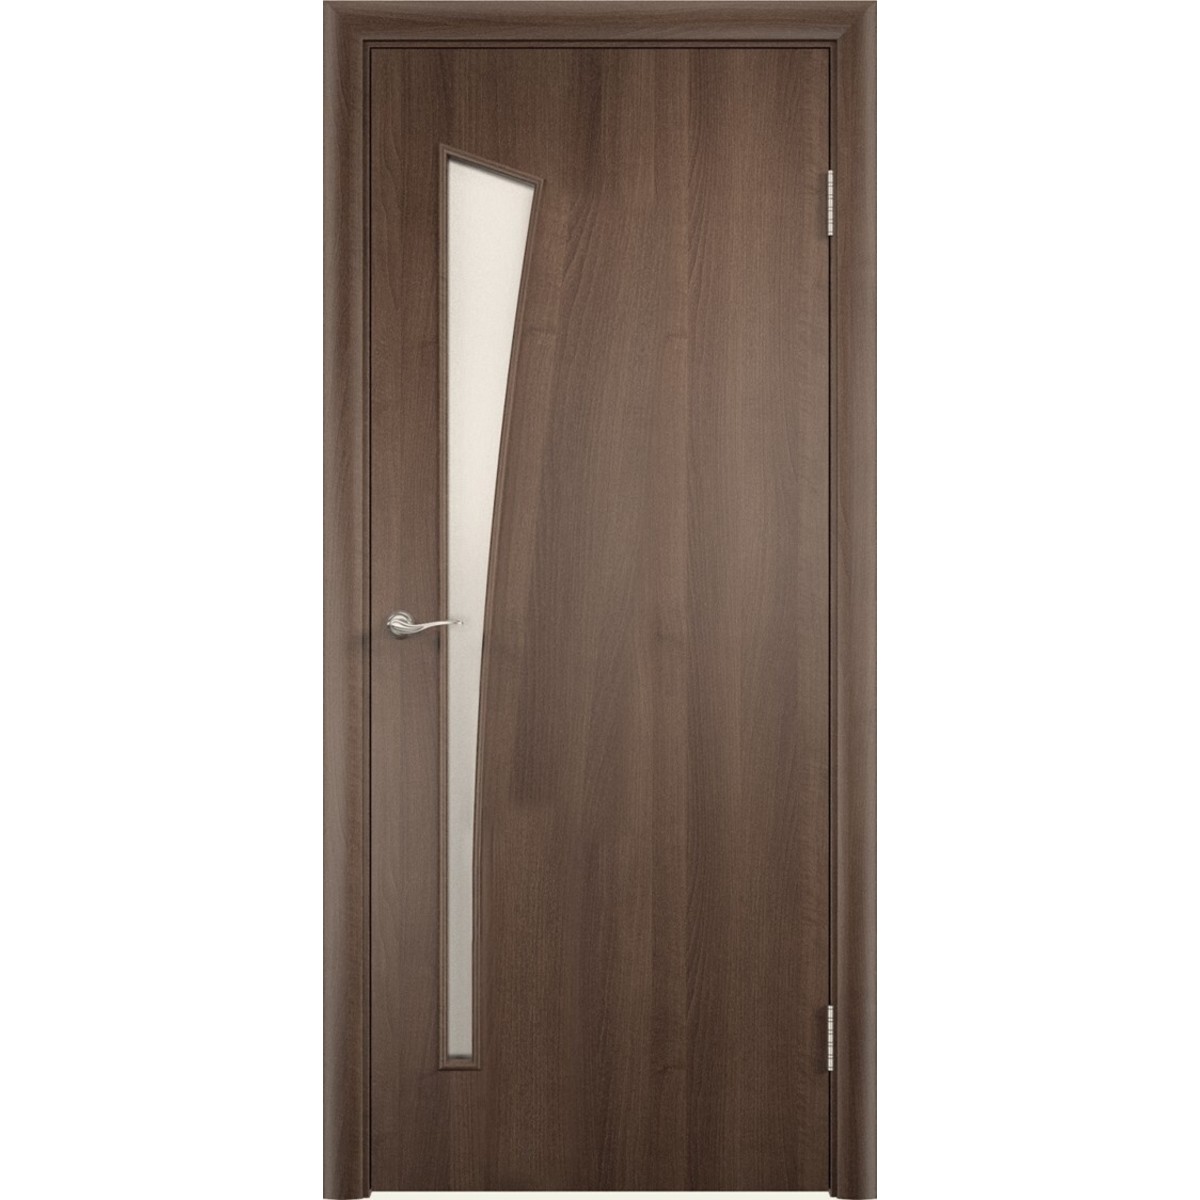 Дверь межкомнатная остеклённая без замка и петель в комплекте Белеза 80x200 см ламинация цвет дуб тёрнер коричневый